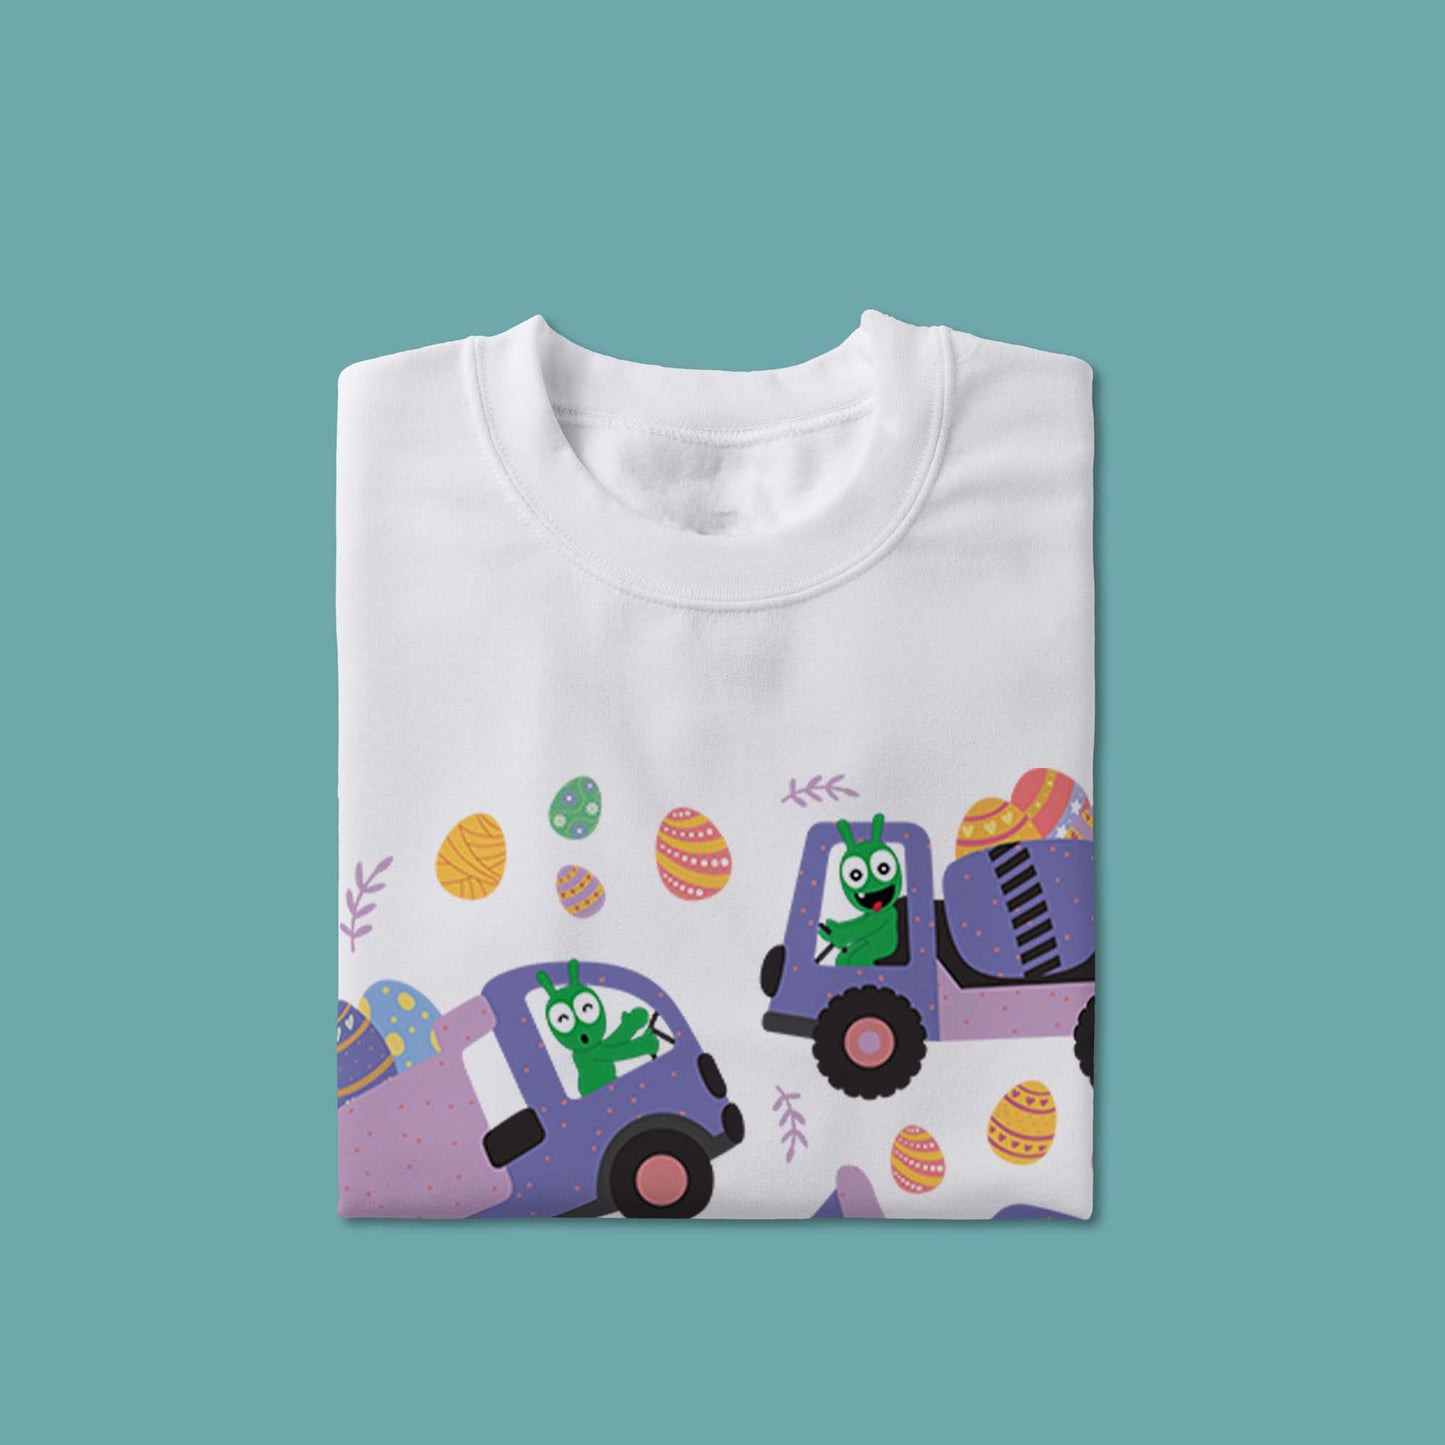 Pea Pea balaie les œufs de Pâques avec un t-shirt pour jeunes de véhicules de construction 